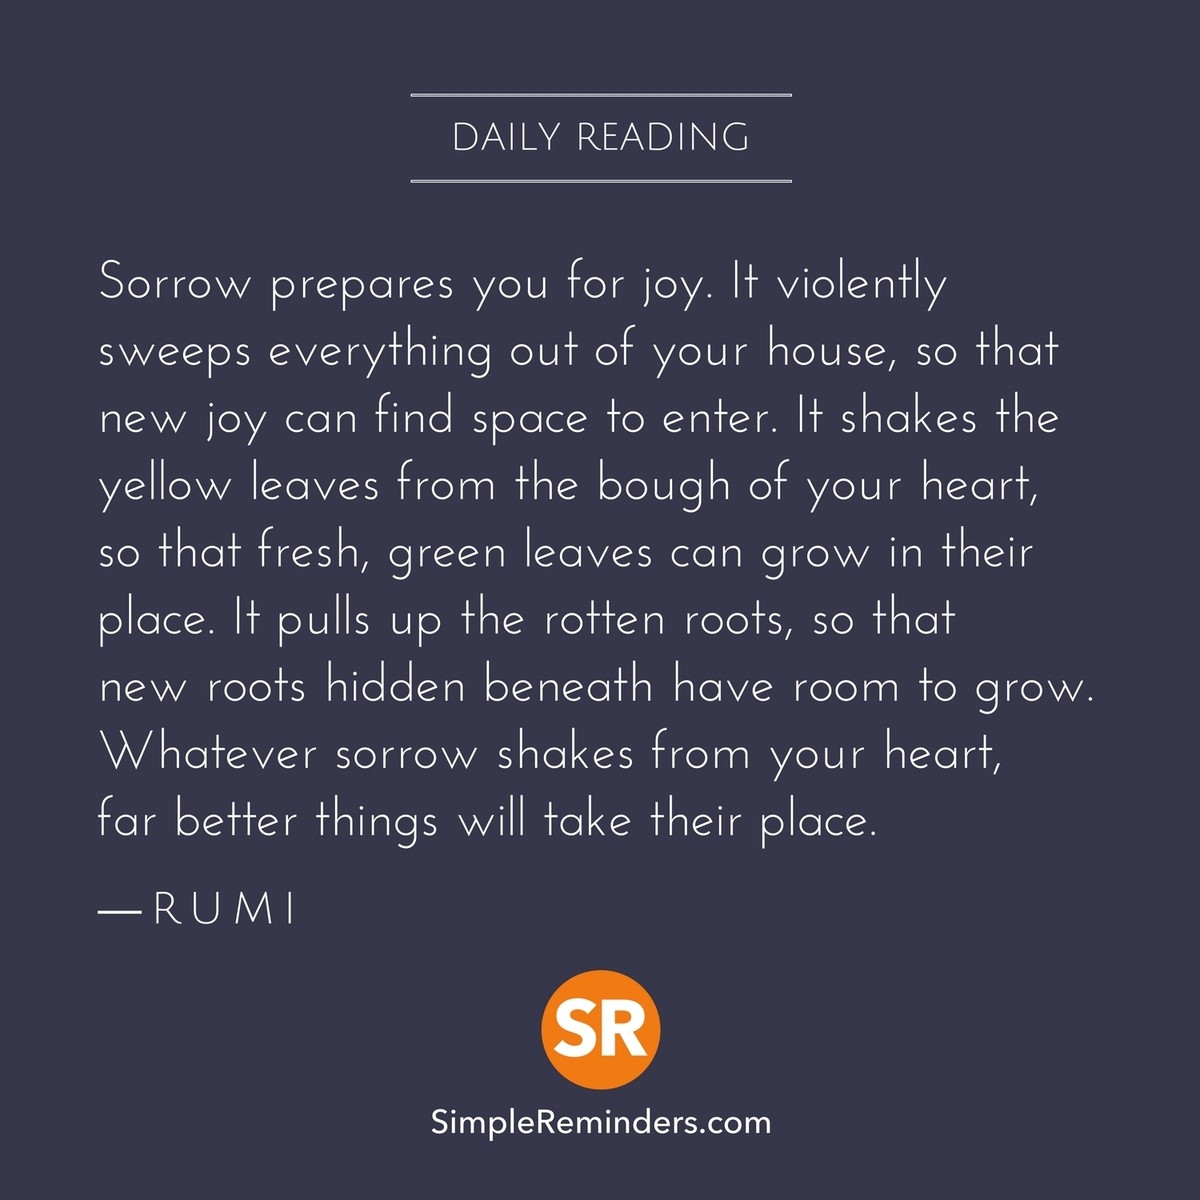 sr-daily-reading-rumi-sorrow-joy-grow-7a5t